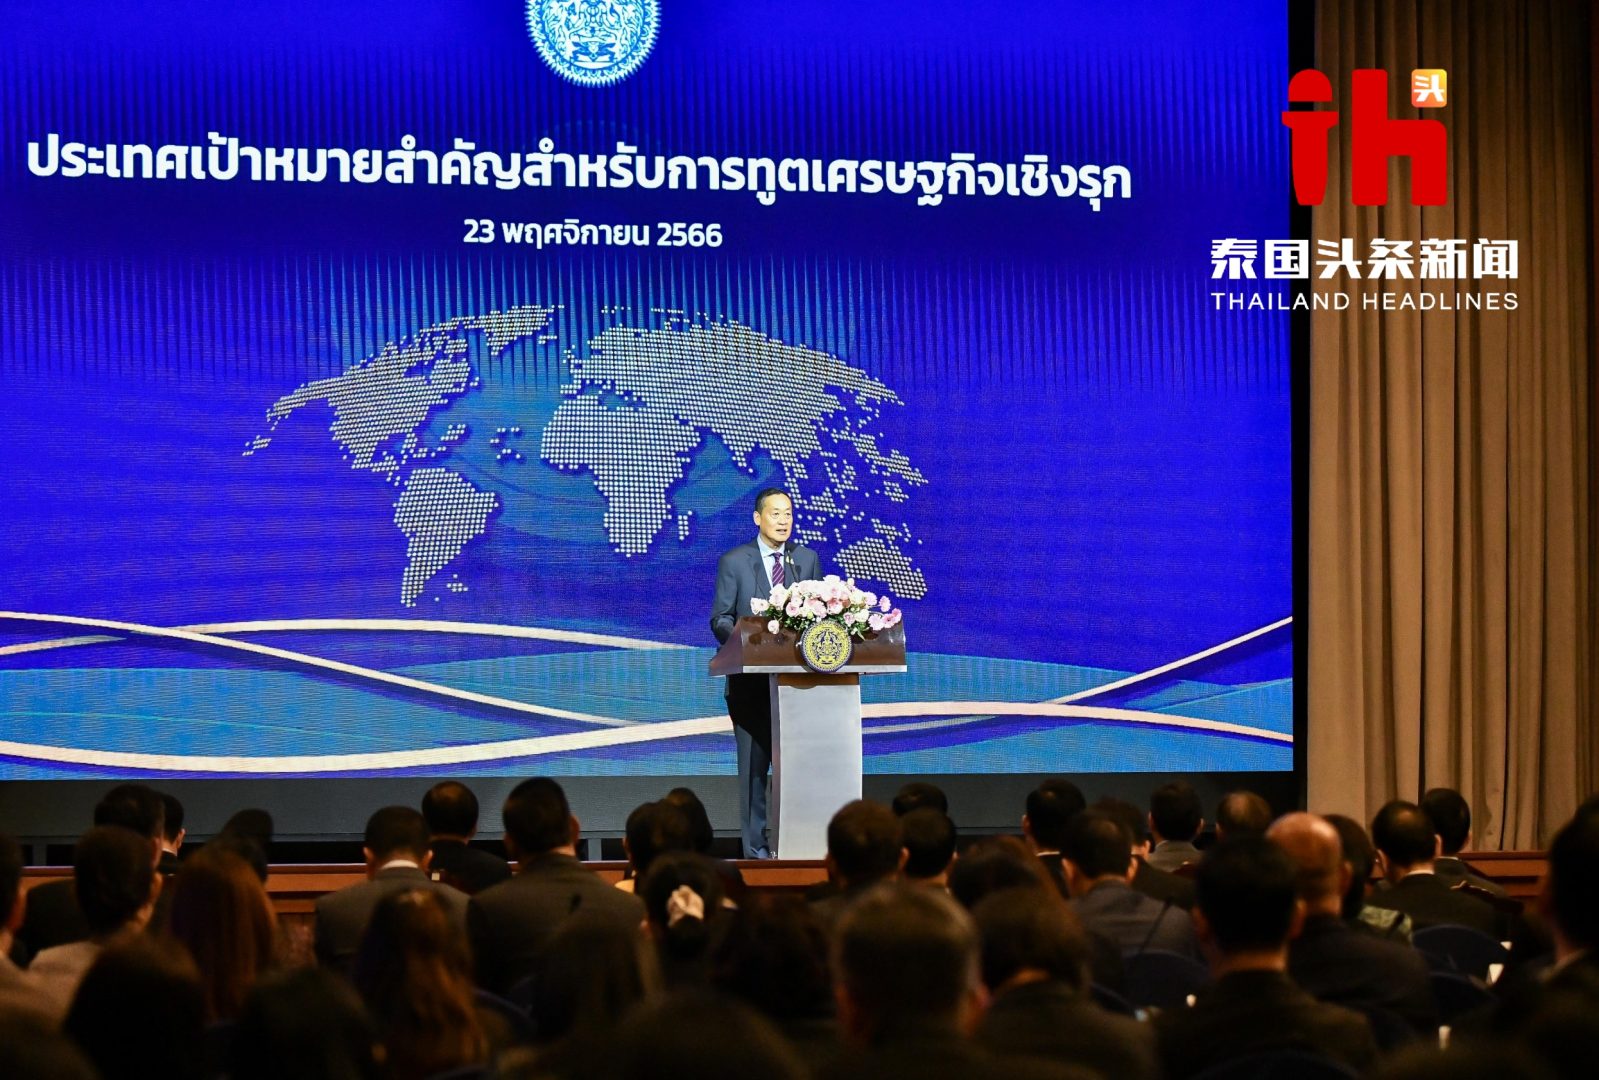 泰国将以中日美等10个国家为主要目标全面展开贸易